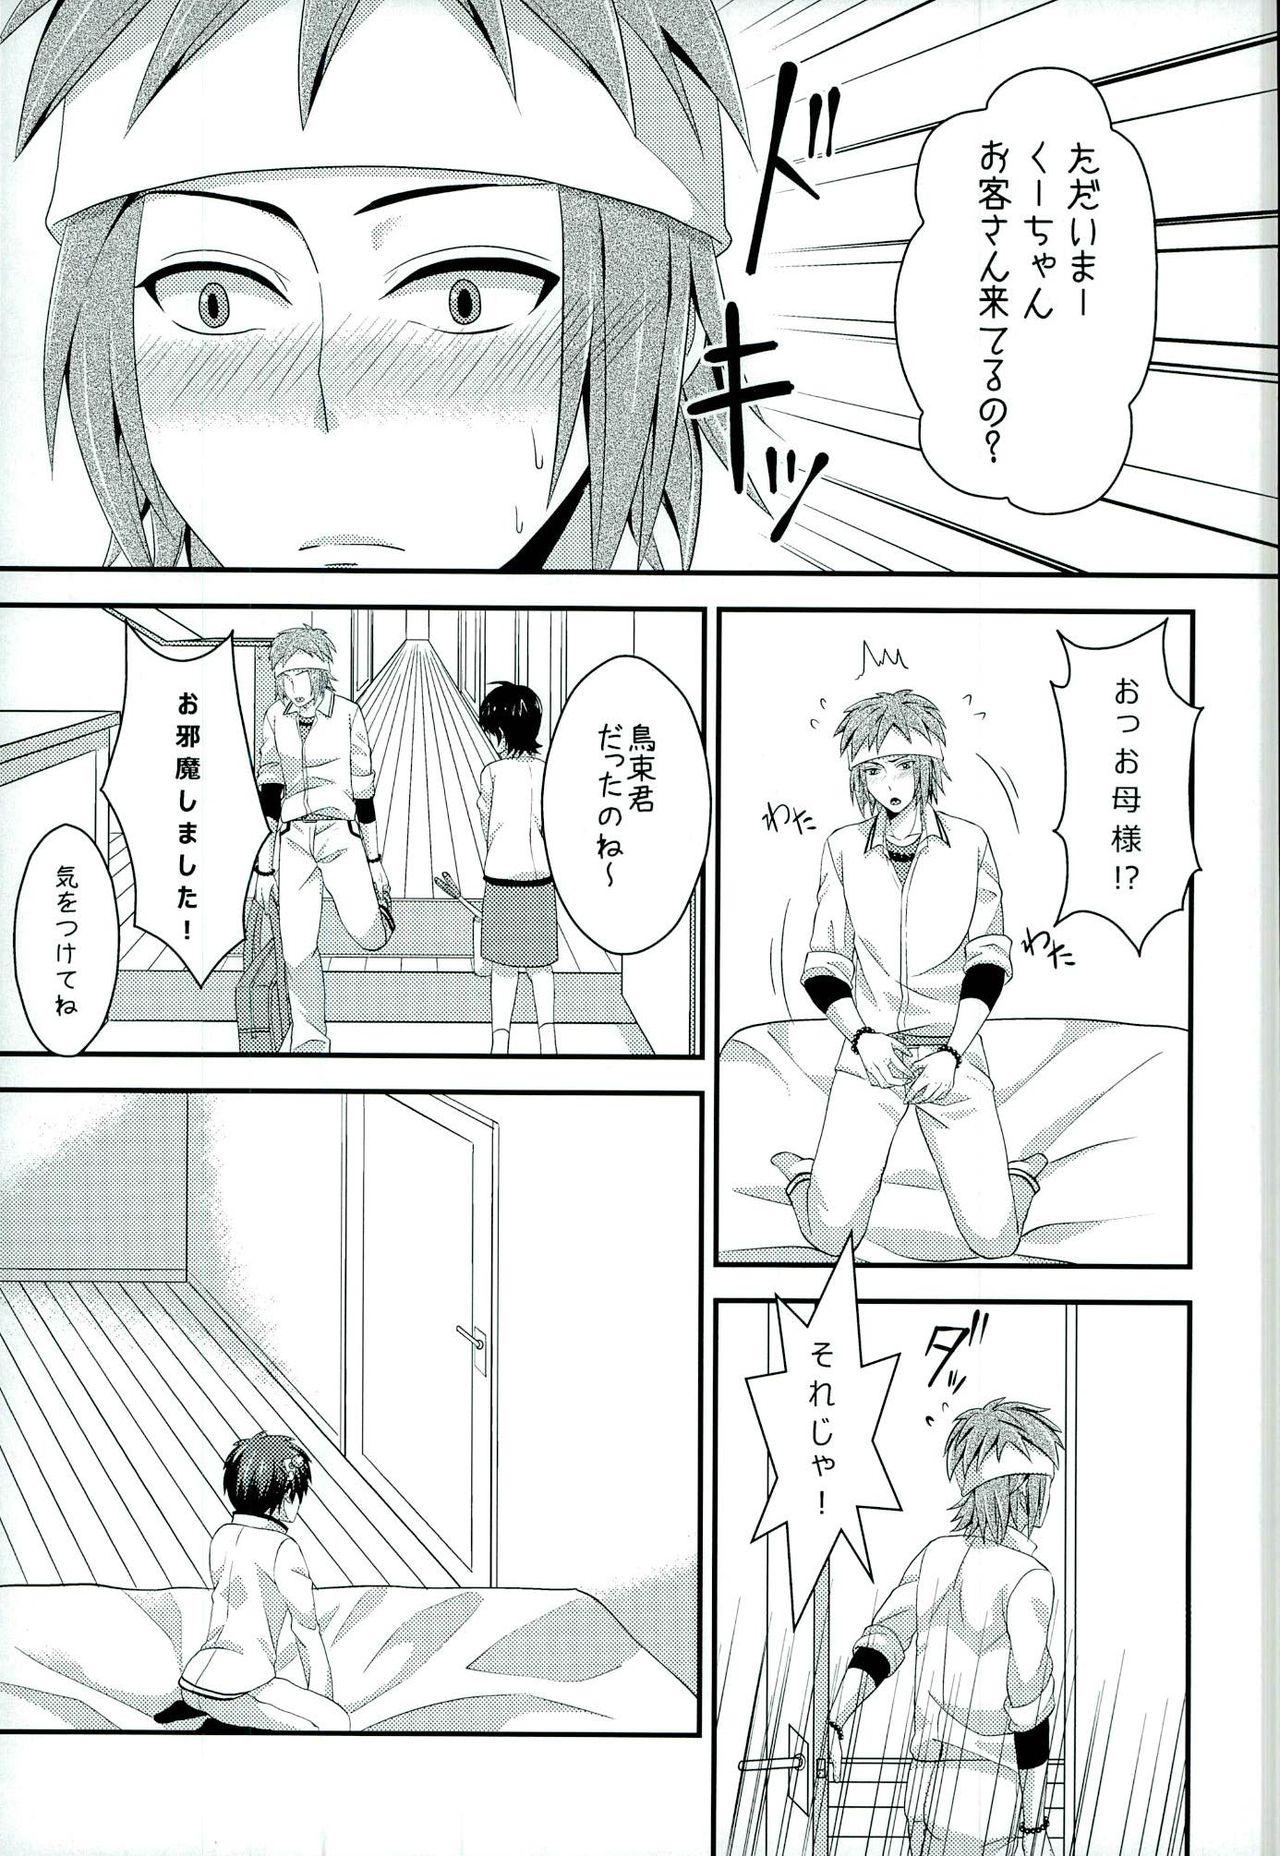 Riding Sona no Koujitsu! - Saiki kusuo no psi nan Fist - Page 12